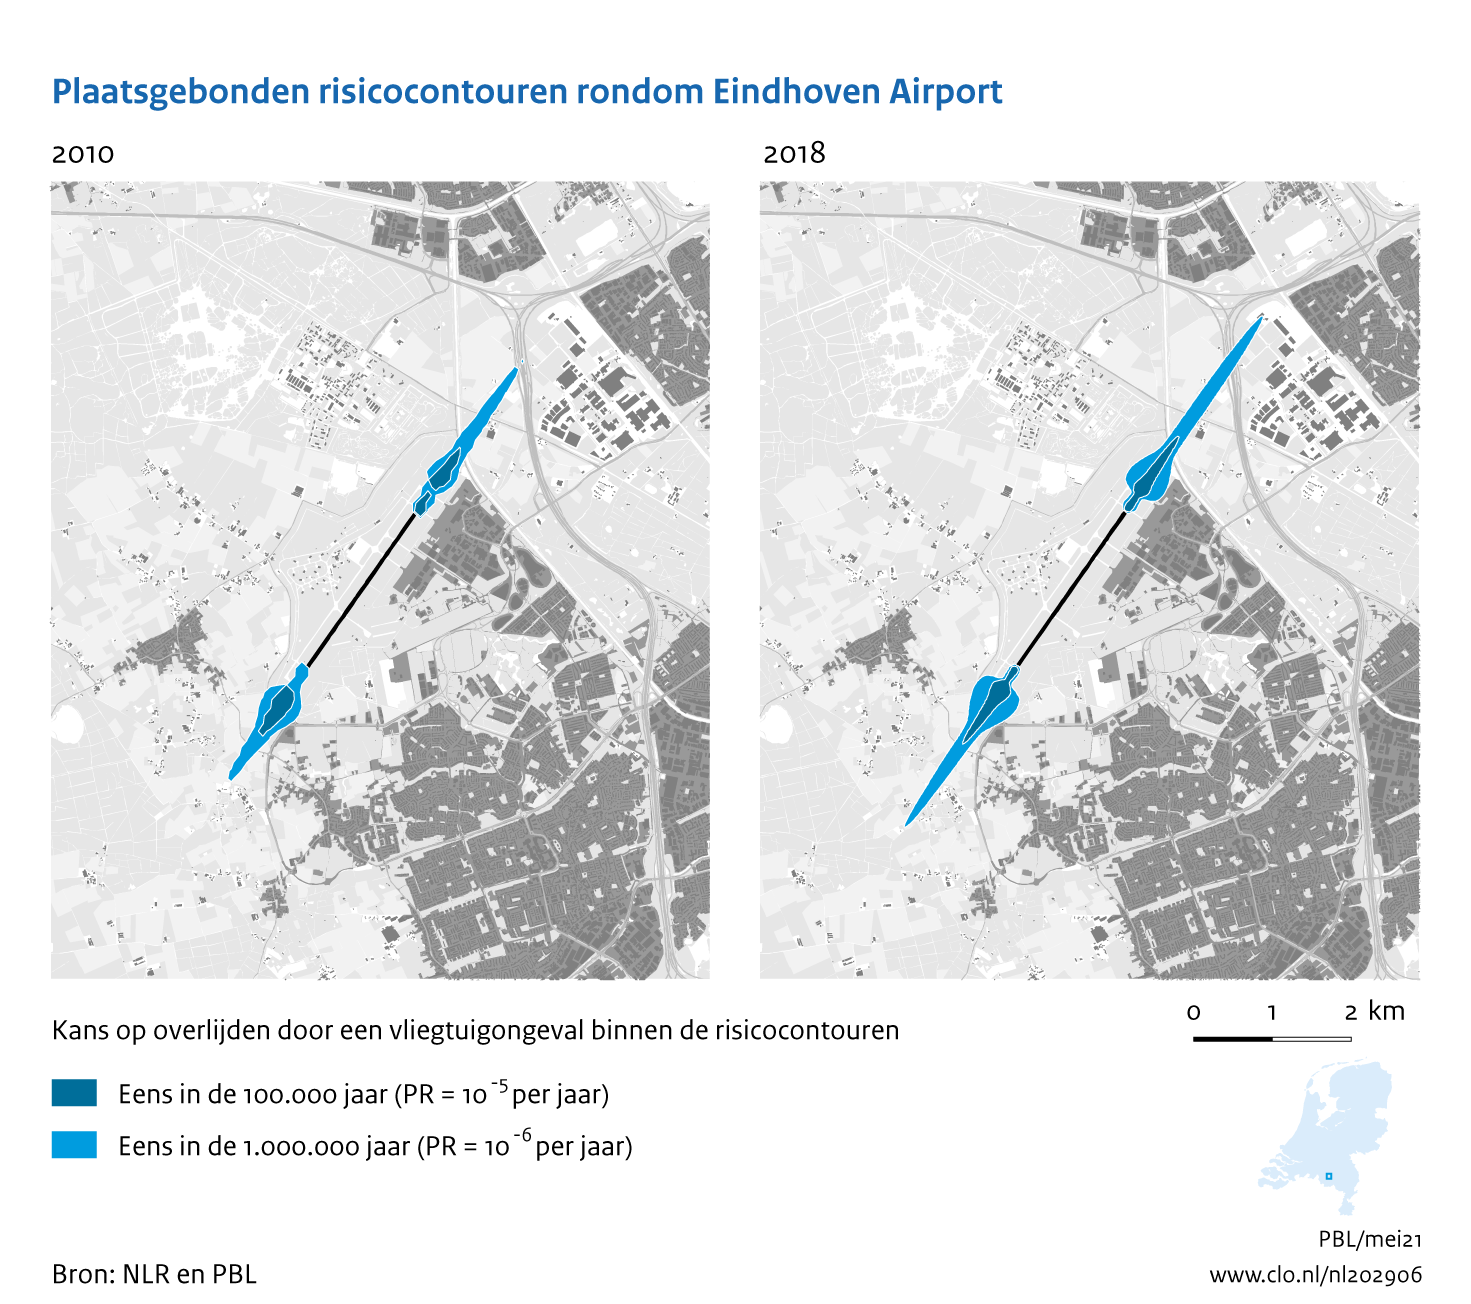 Figuur Plaatsgebonden risicocontouren rondom Eindhoven Airport, 2010-2018. In de rest van de tekst wordt deze figuur uitgebreider uitgelegd.